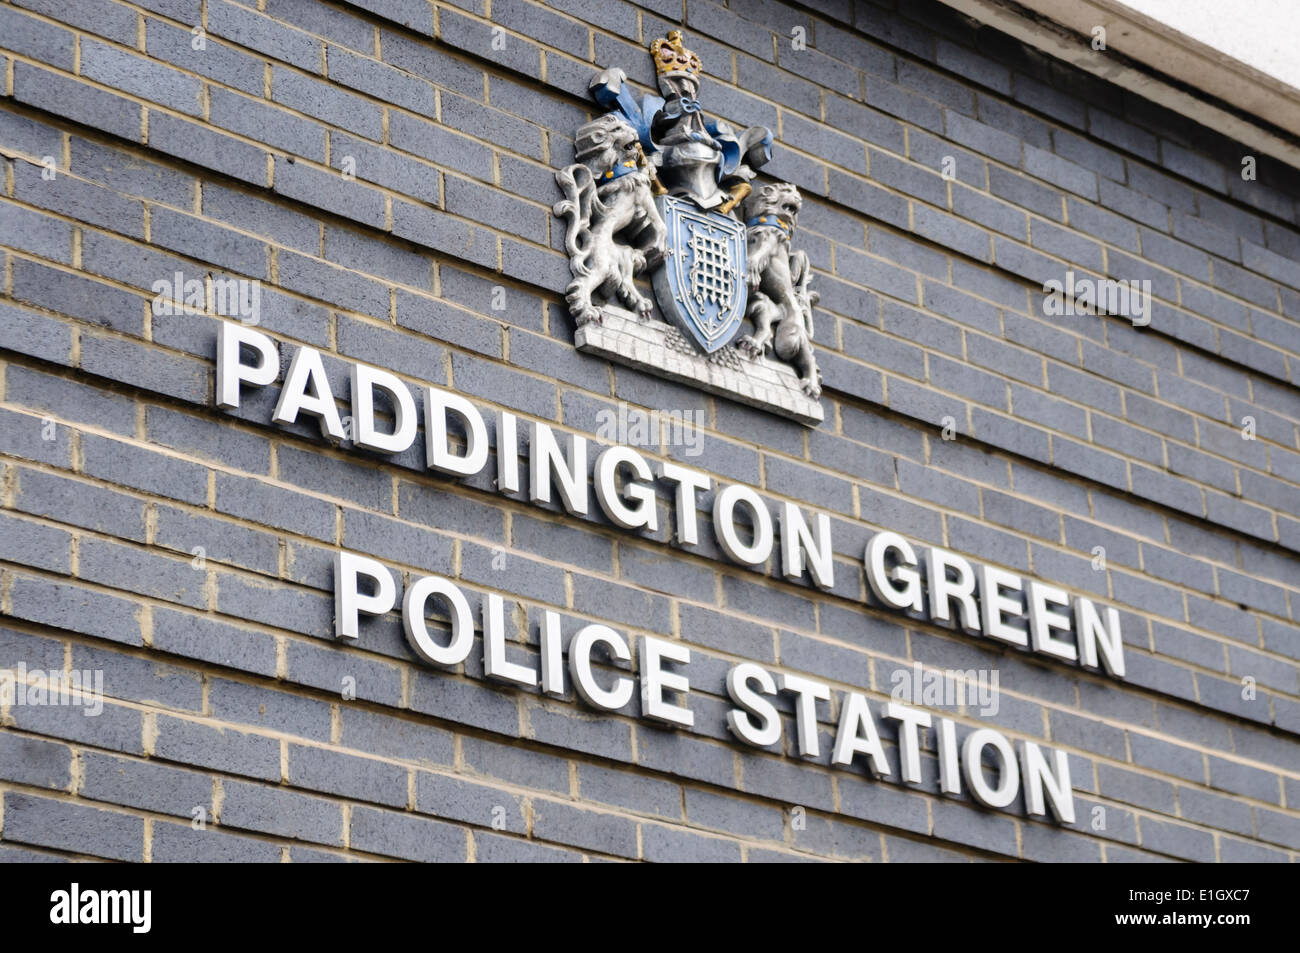 Paddington Green Metropolitan Police Station, Stock Photo